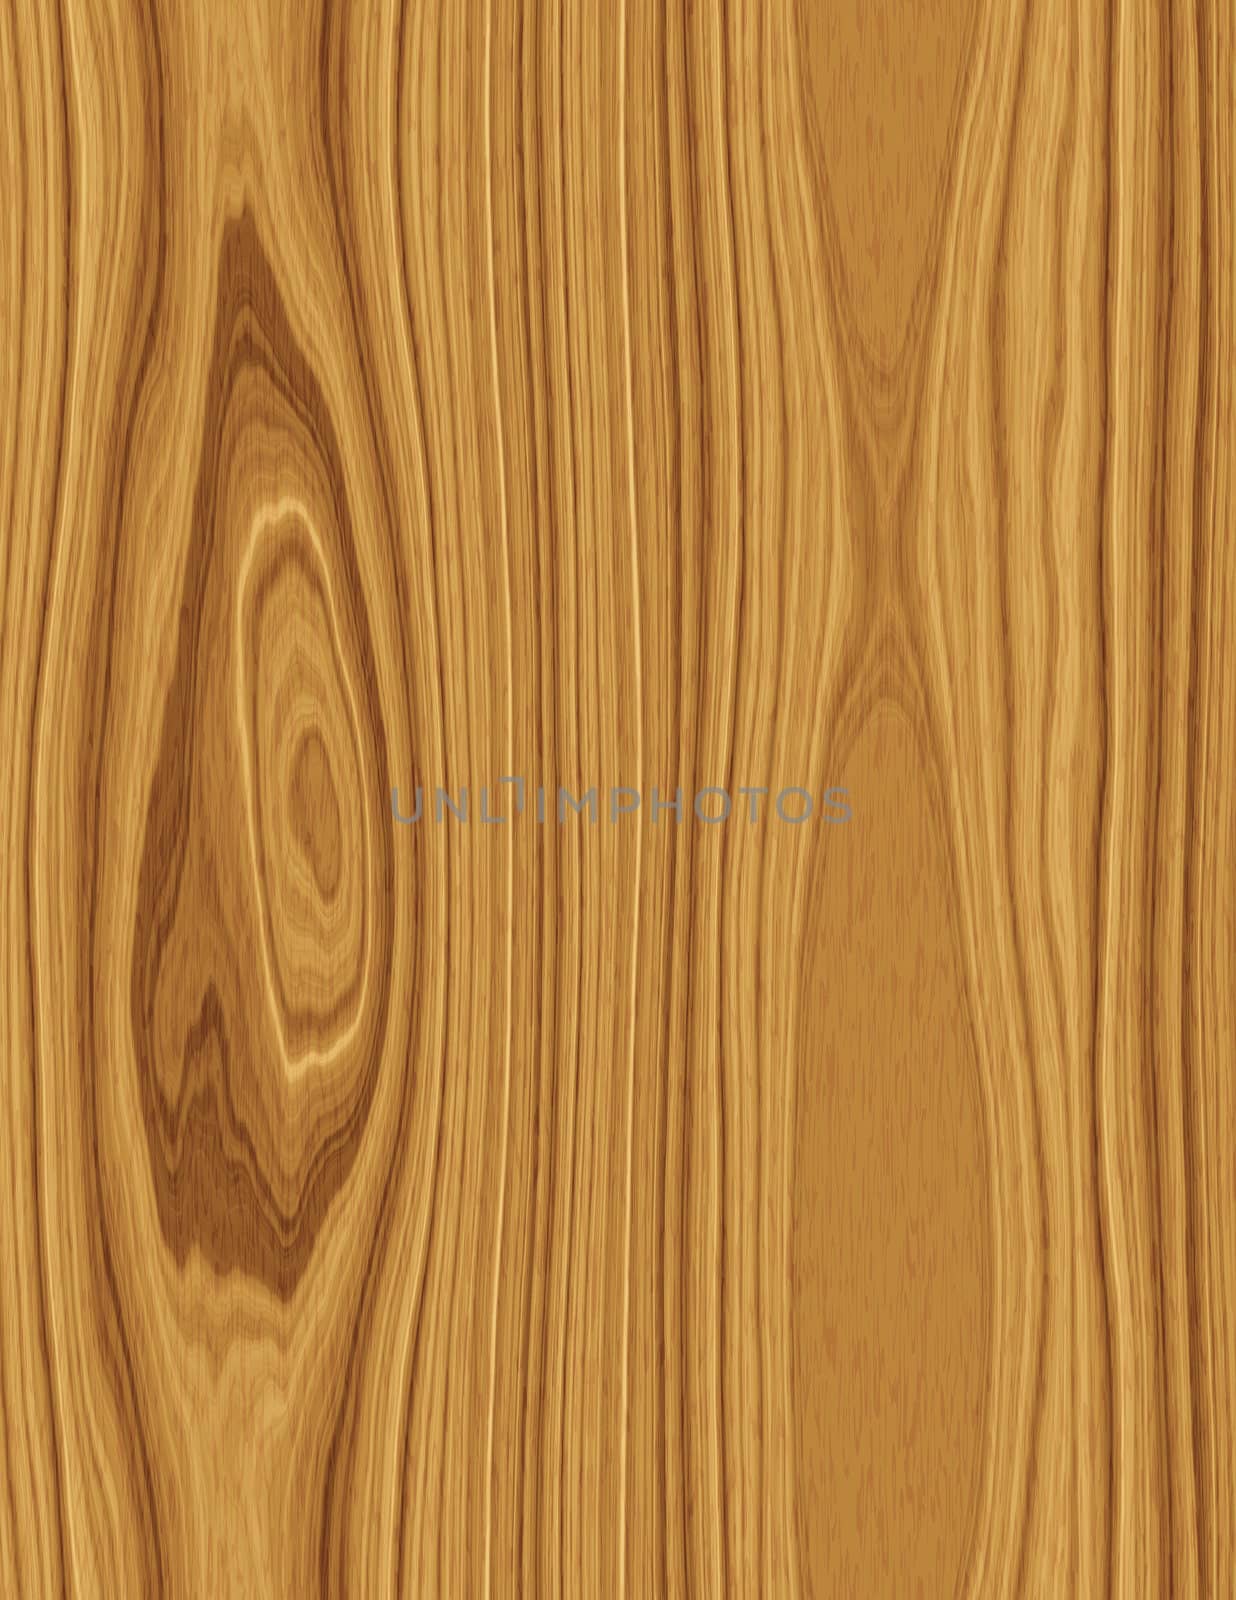 nice large image of polished wood texture